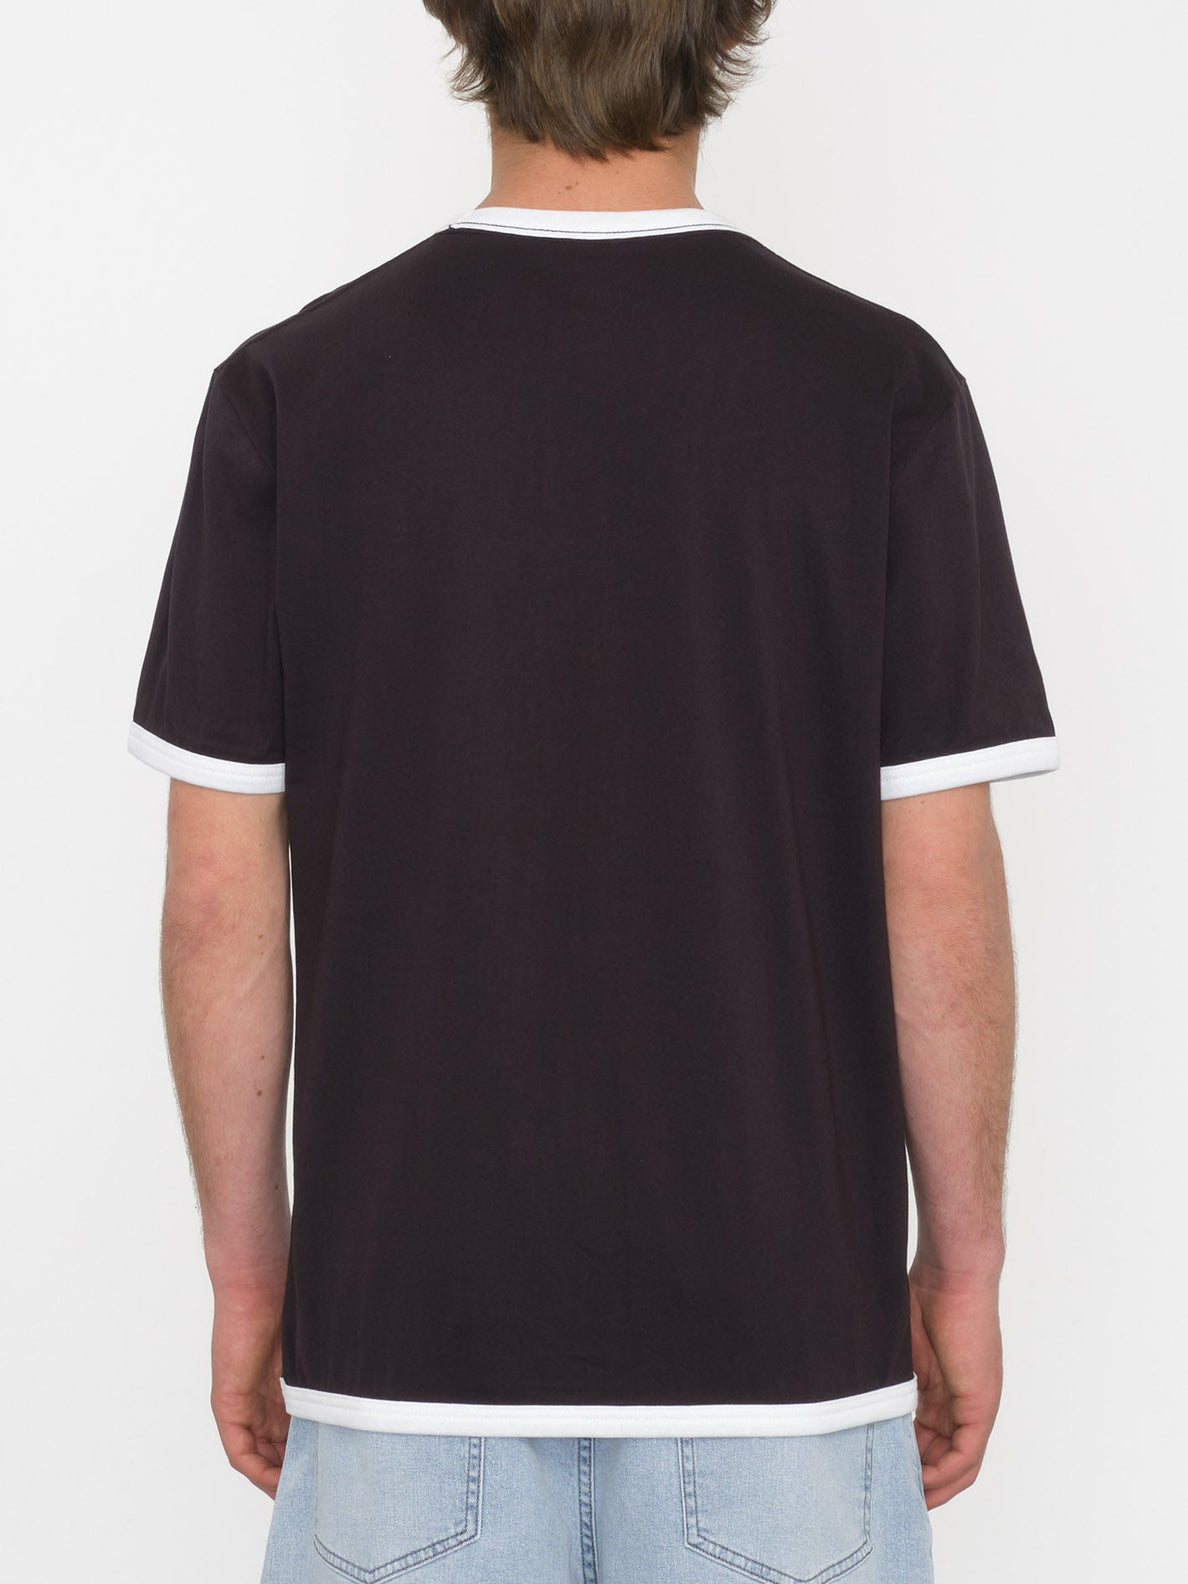 Fullring Ringer T-shirt - BLACK